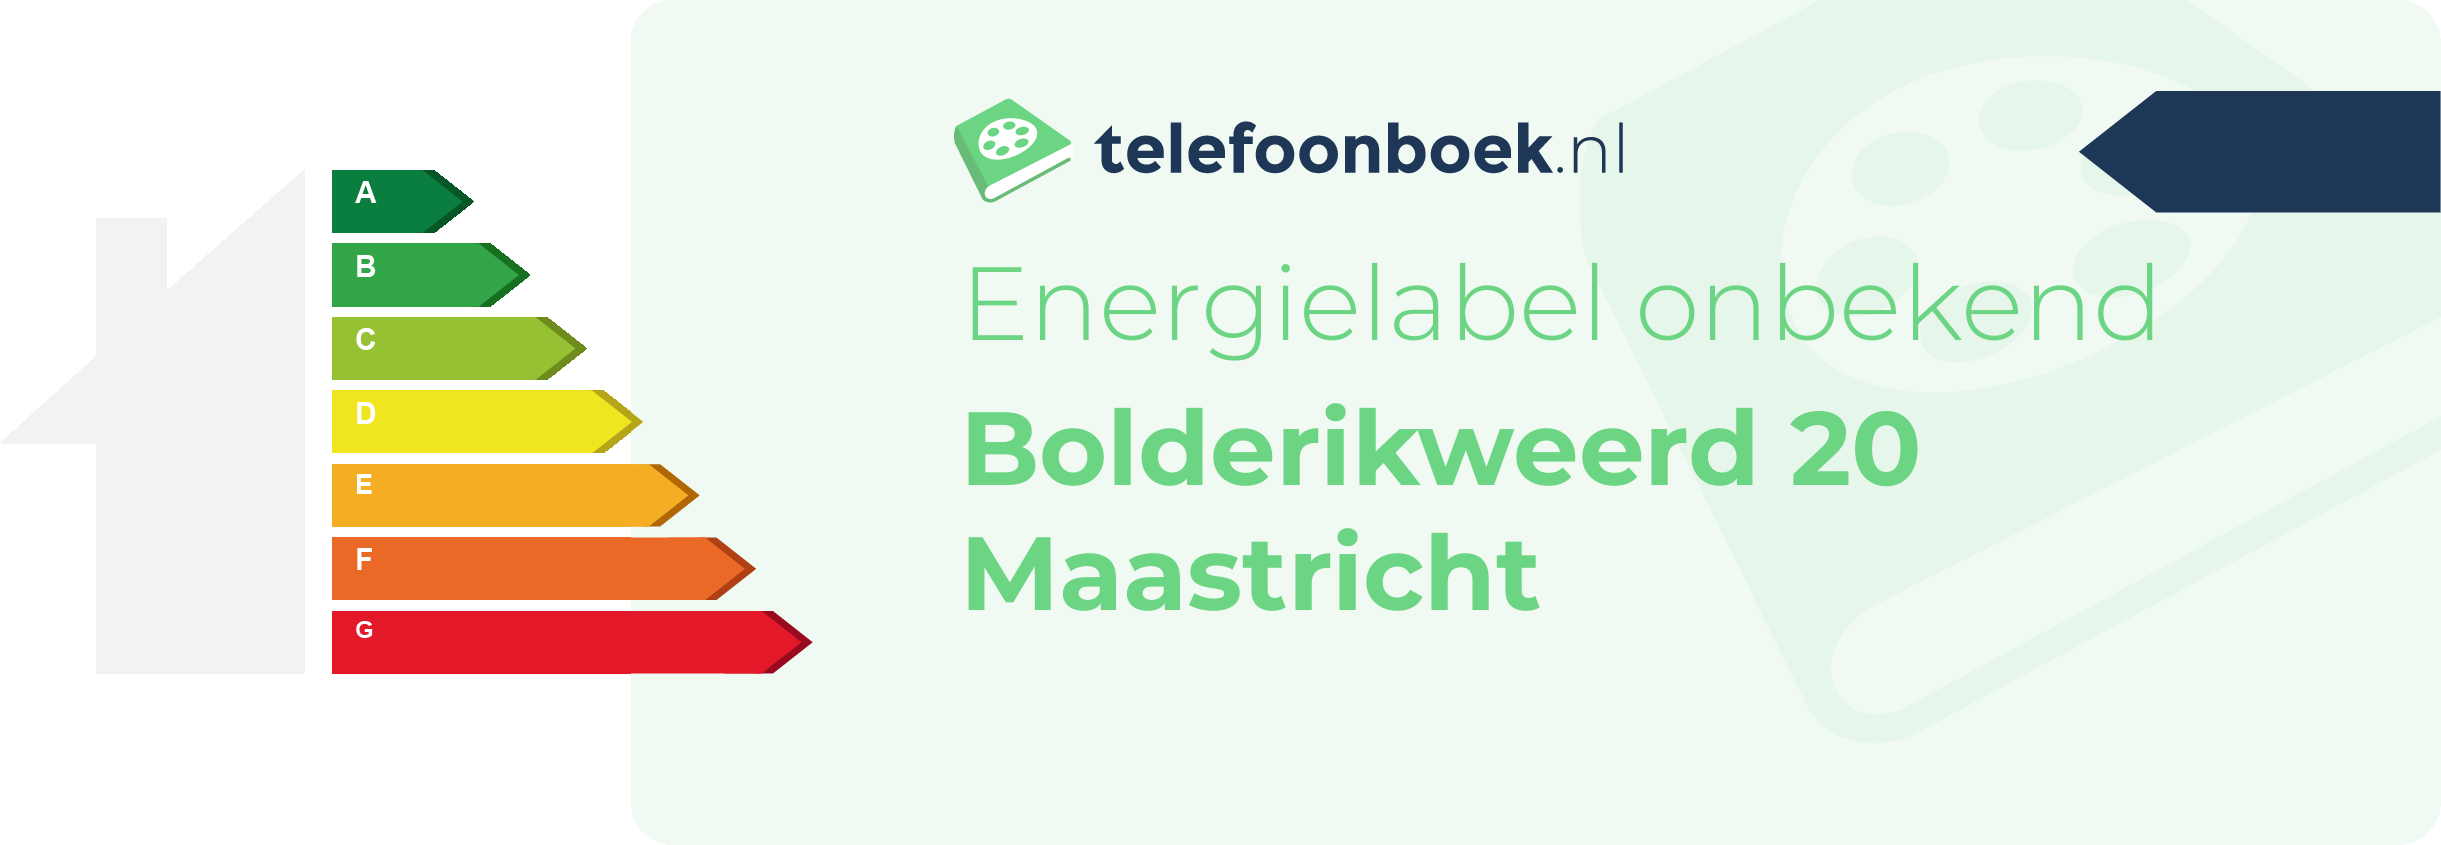 Energielabel Bolderikweerd 20 Maastricht